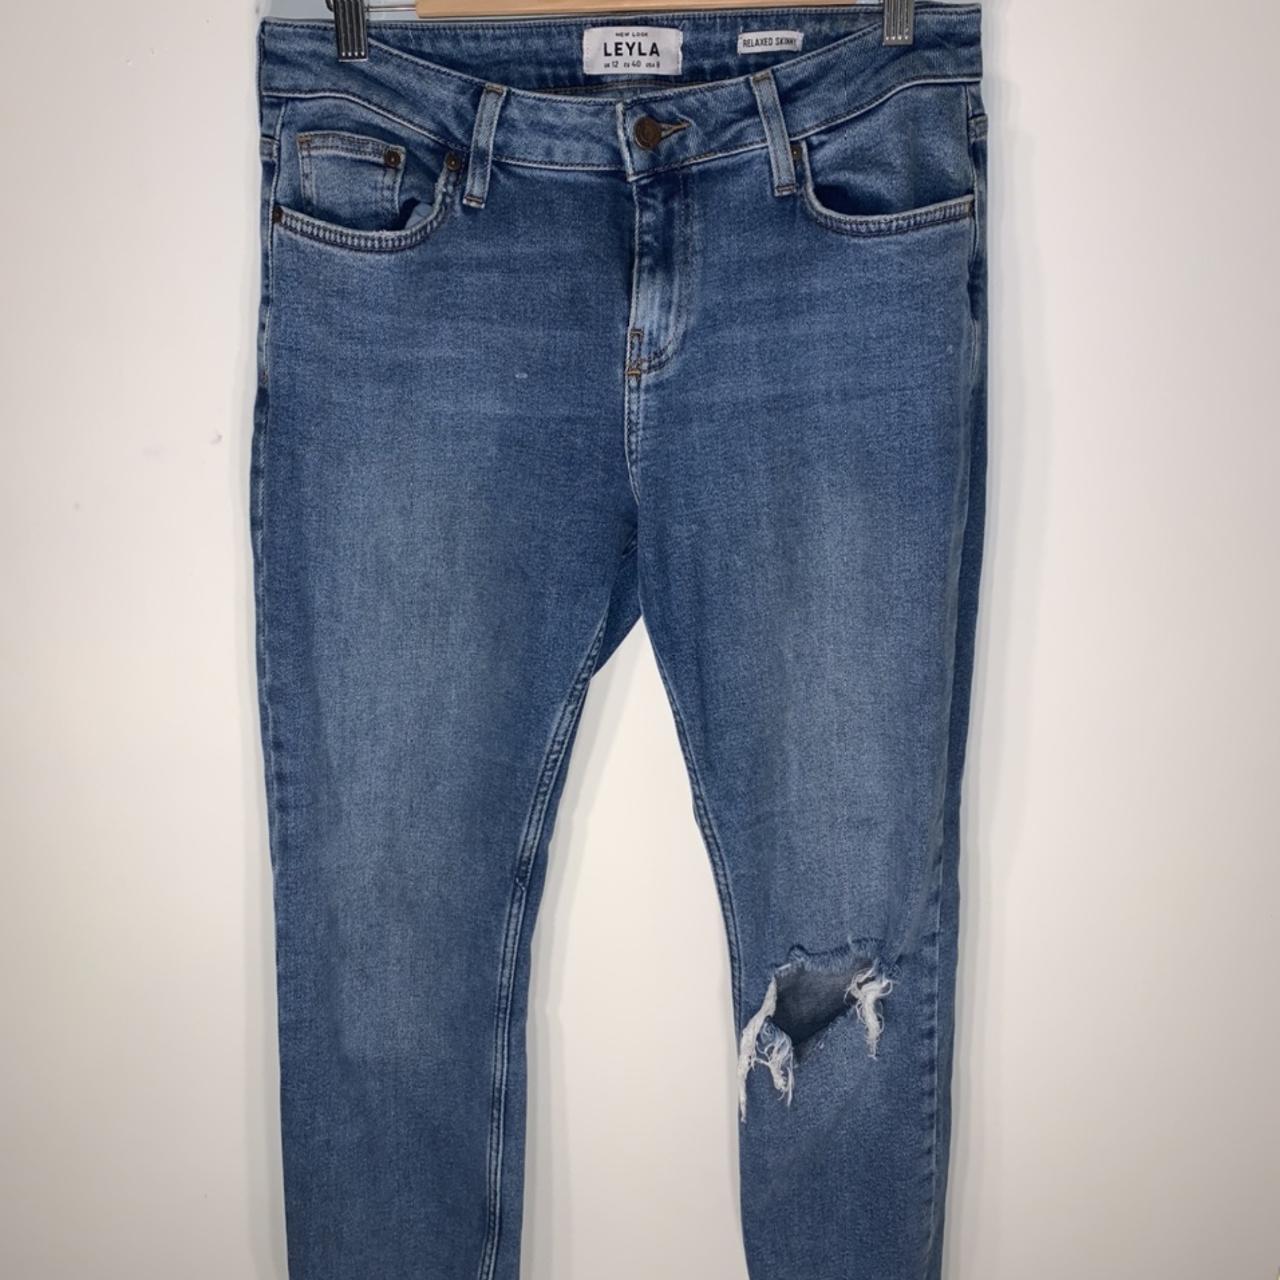 New Look Women's Blue Jeans | Depop